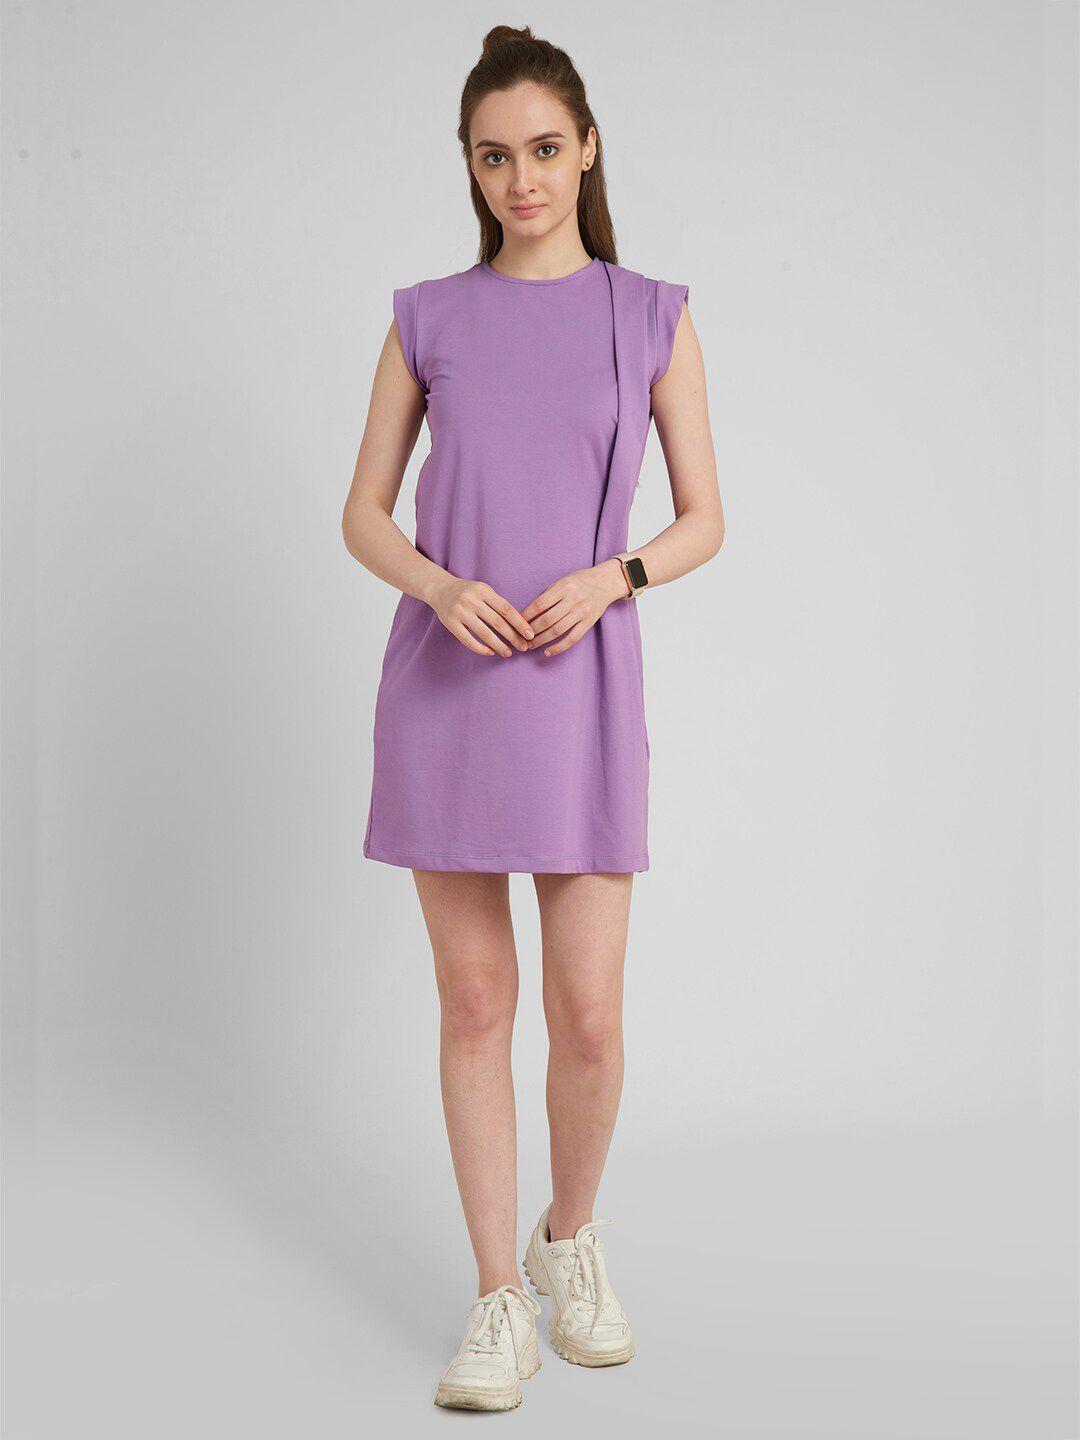 aturabi purple a-line dress